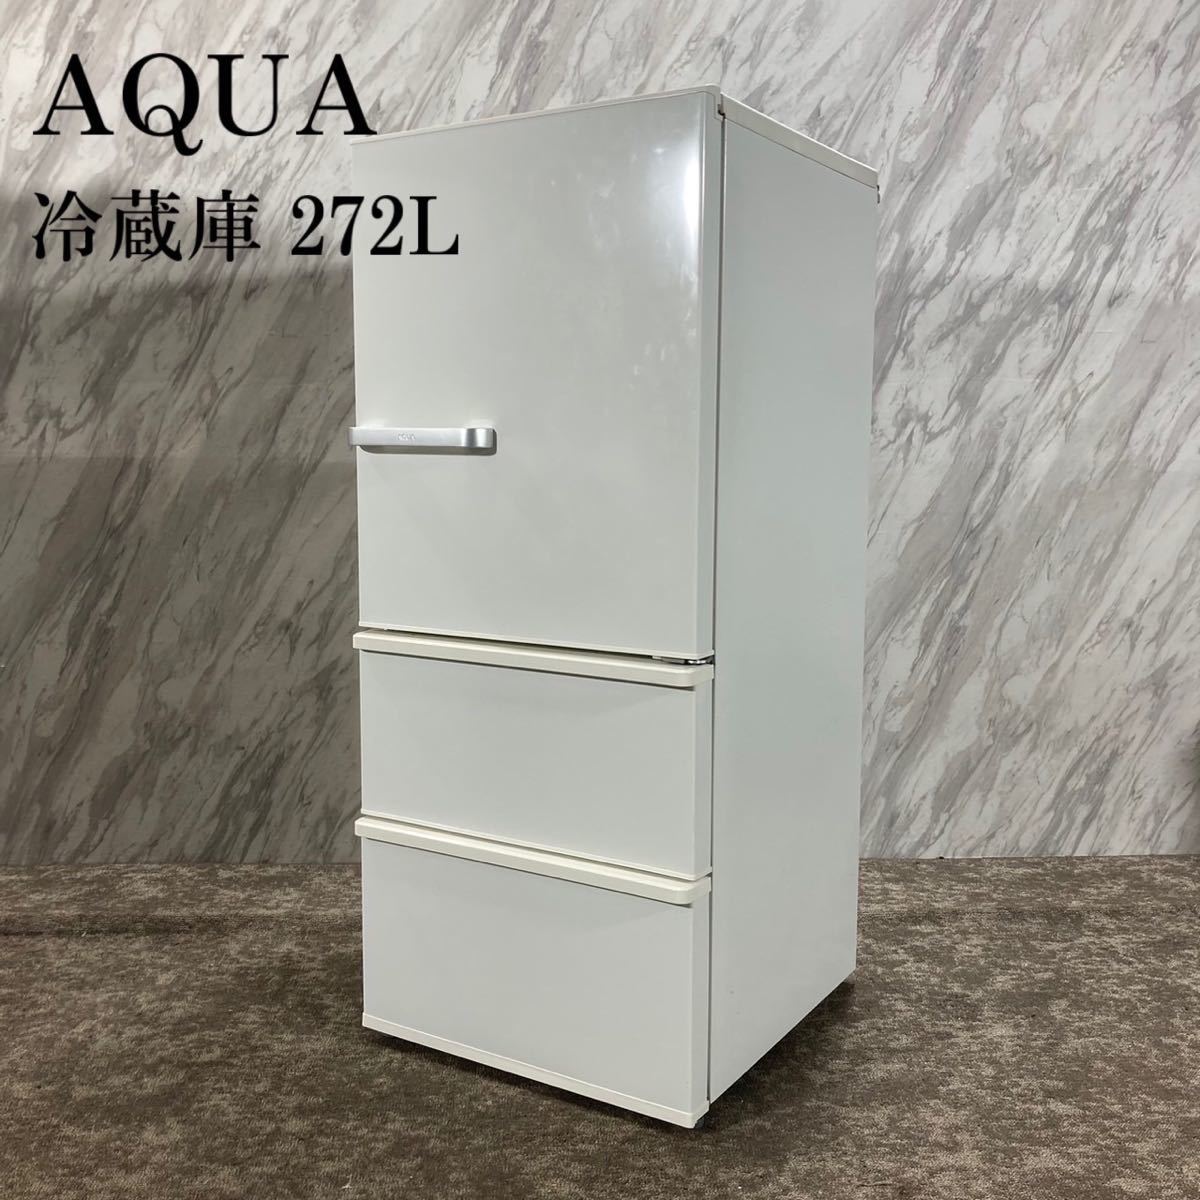 贅沢品 冷蔵庫 AQUA AQR-27G(W) K725 家電 2018年製 272L 200リットル